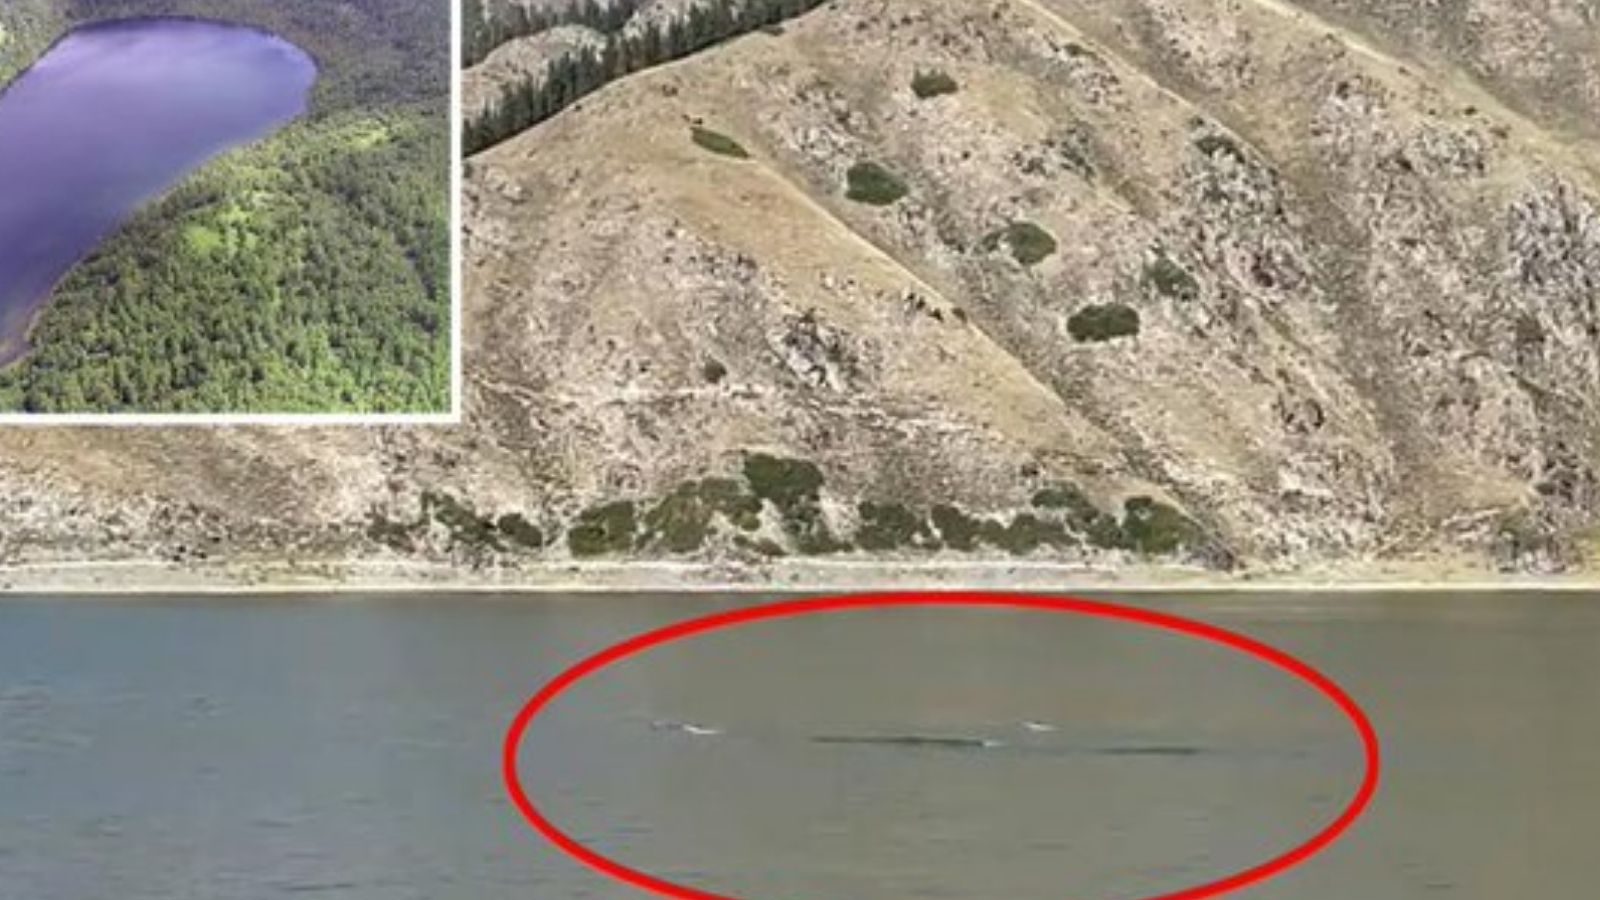 Makhluk setinggi 50 kaki ditemukan di sungai?  Para ilmuwan melakukan penelitian ekstensif